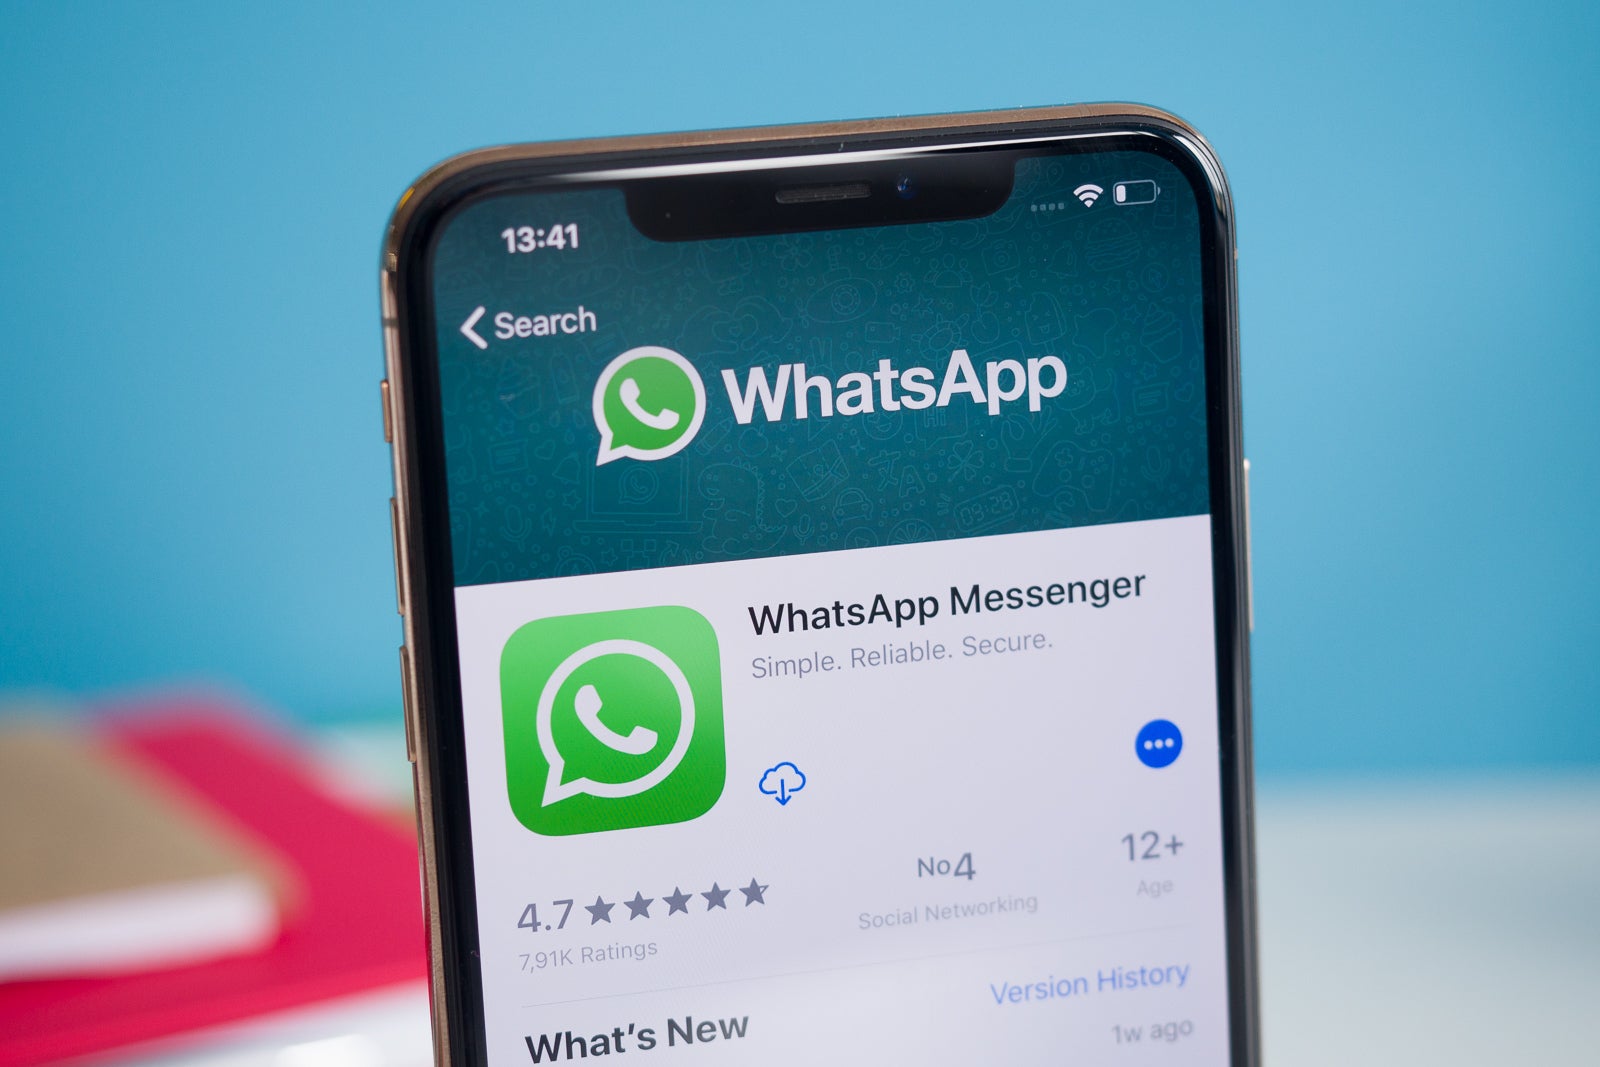 WhatsApp est l'une des applications de messagerie les plus populaires, avec plus de 5 milliards de téléchargements sur Android uniquement.  - La nouvelle fonctionnalité Call Links de WhatsApp commence le déploiement